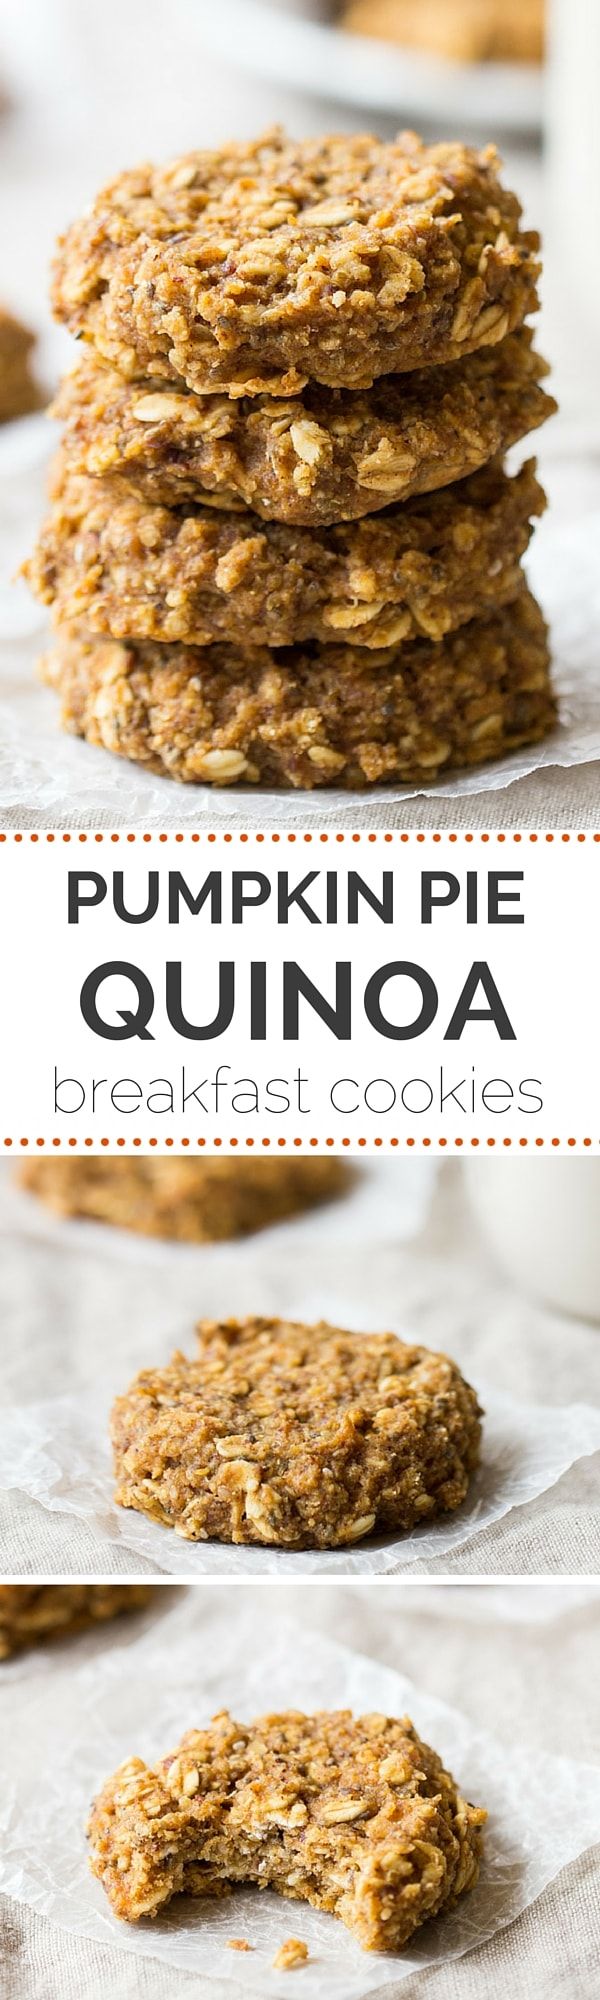 Pumpkin Pie Quinoa Breakfast Cookies